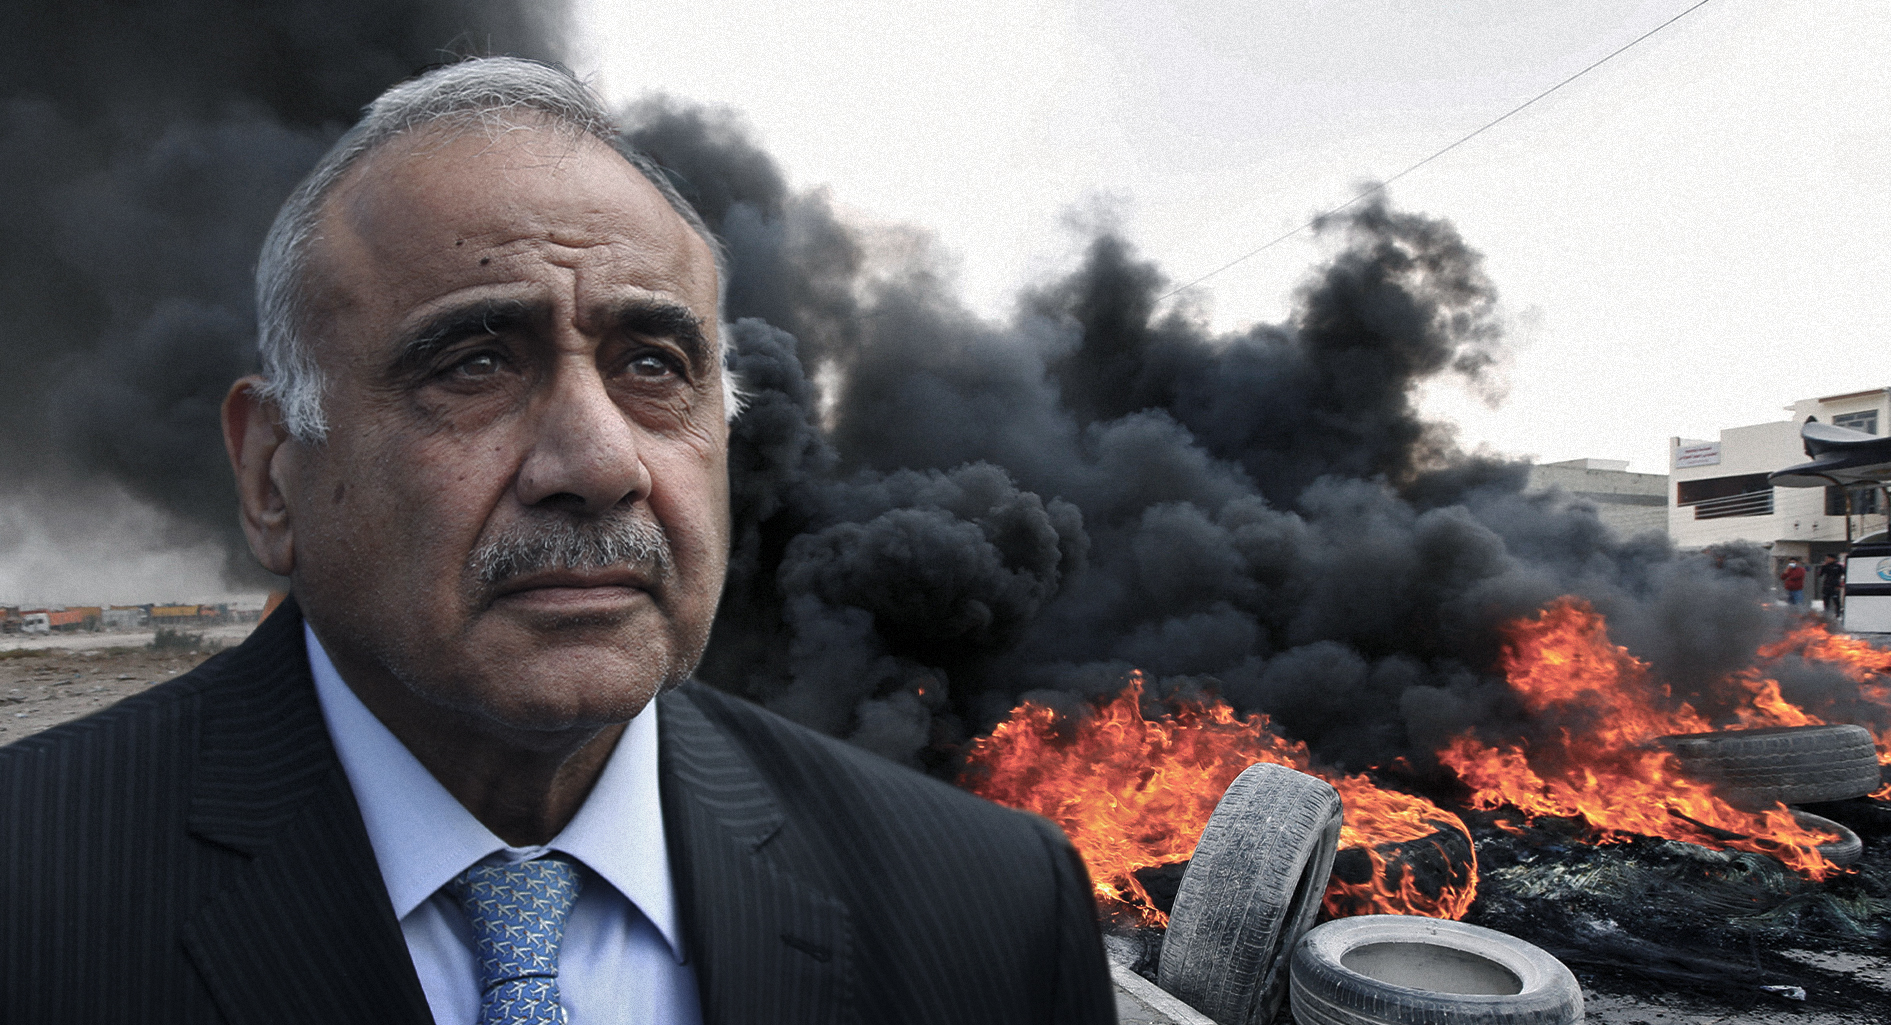 صورة عبد المهدي يقدّم استقالته احتجاجاً على تخاذل أجهزة الدولة بإخماد الاحتجاجات